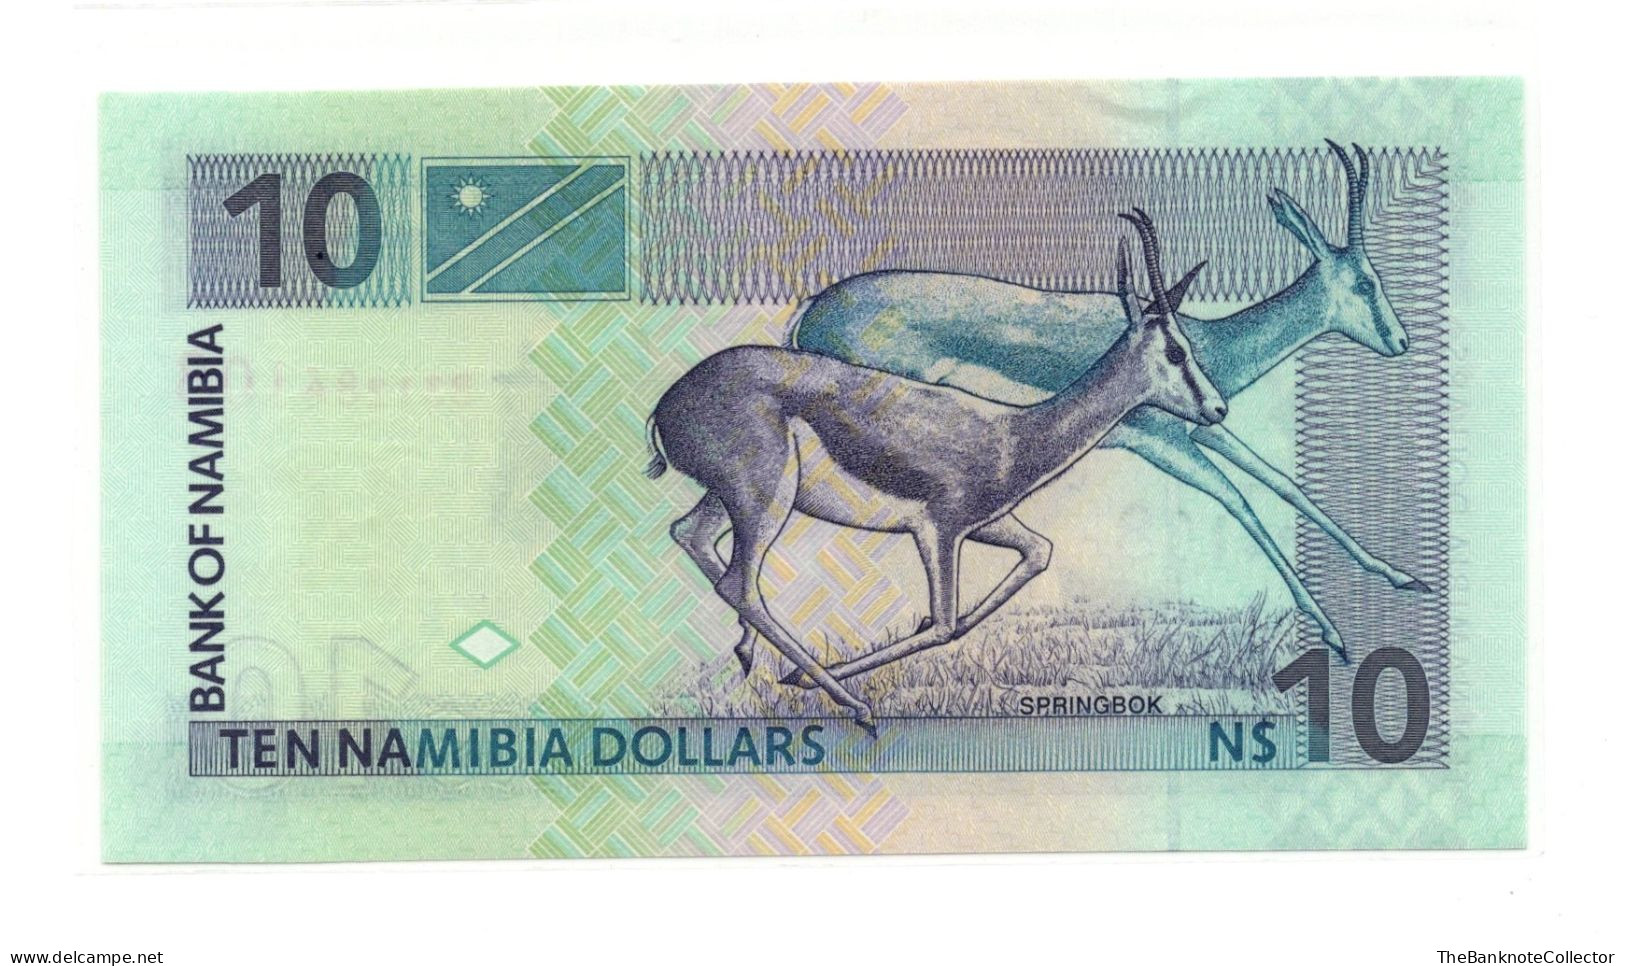 Namibia 10 Dollars ND 1996-2003 P-4 UNC - Namibië